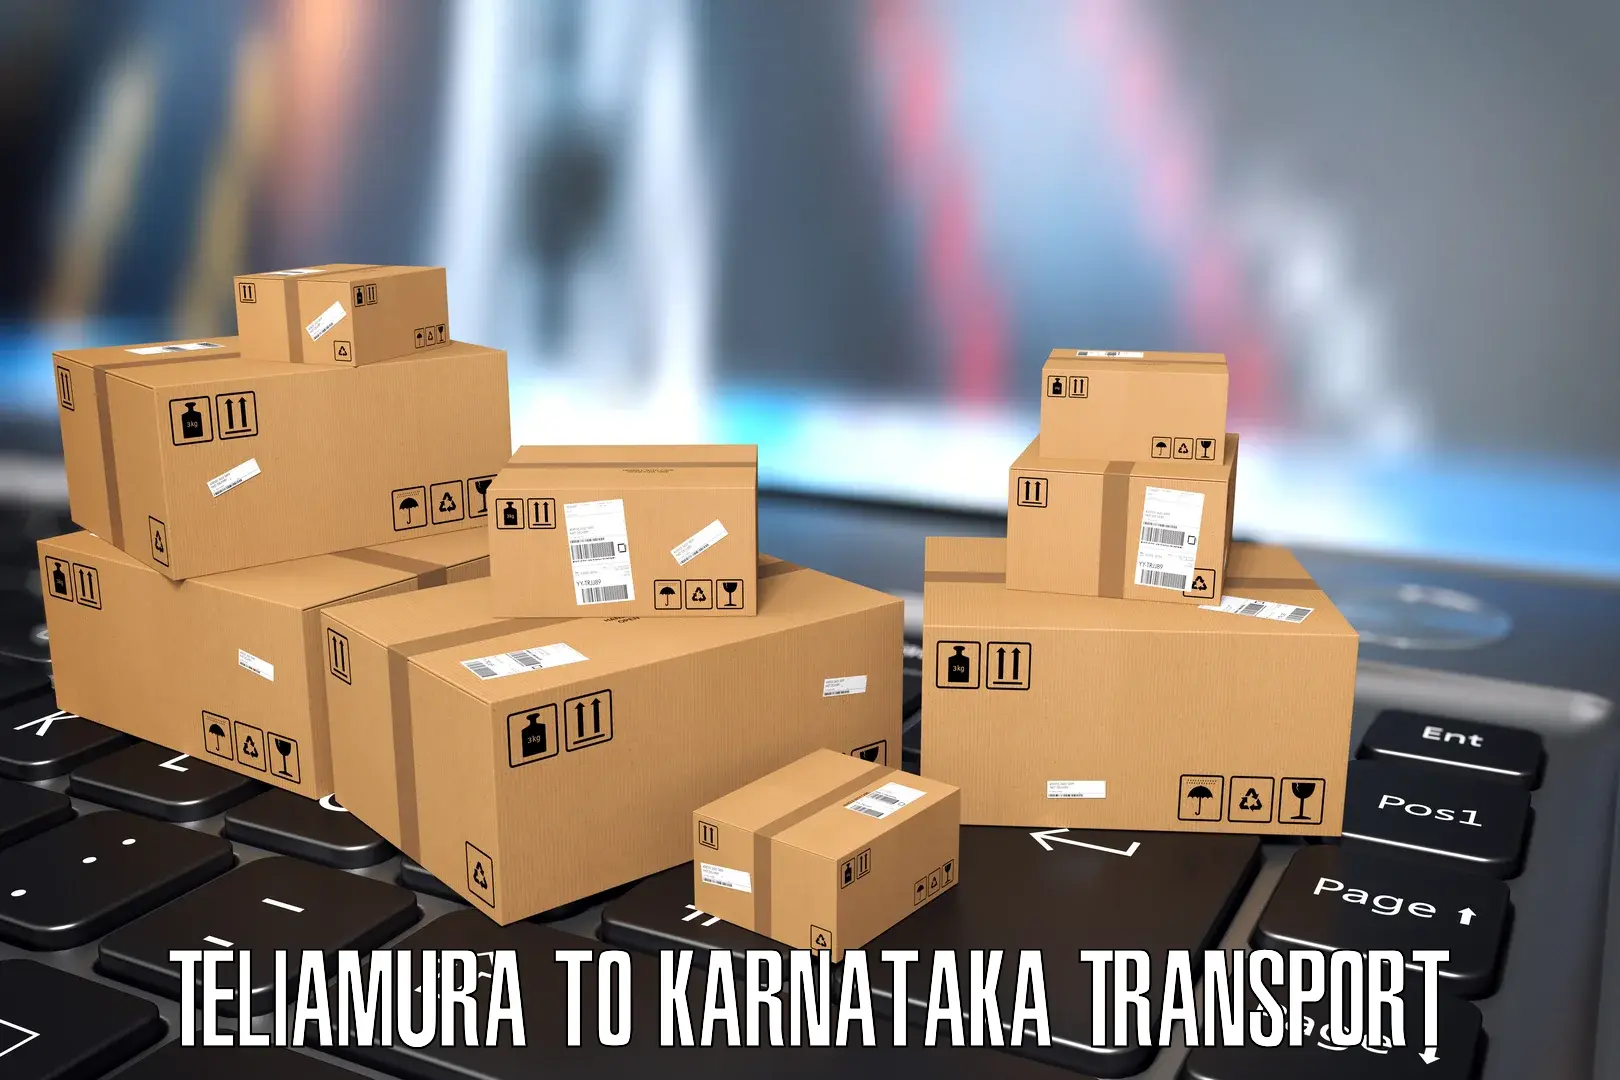 Bike shipping service Teliamura to Karnataka